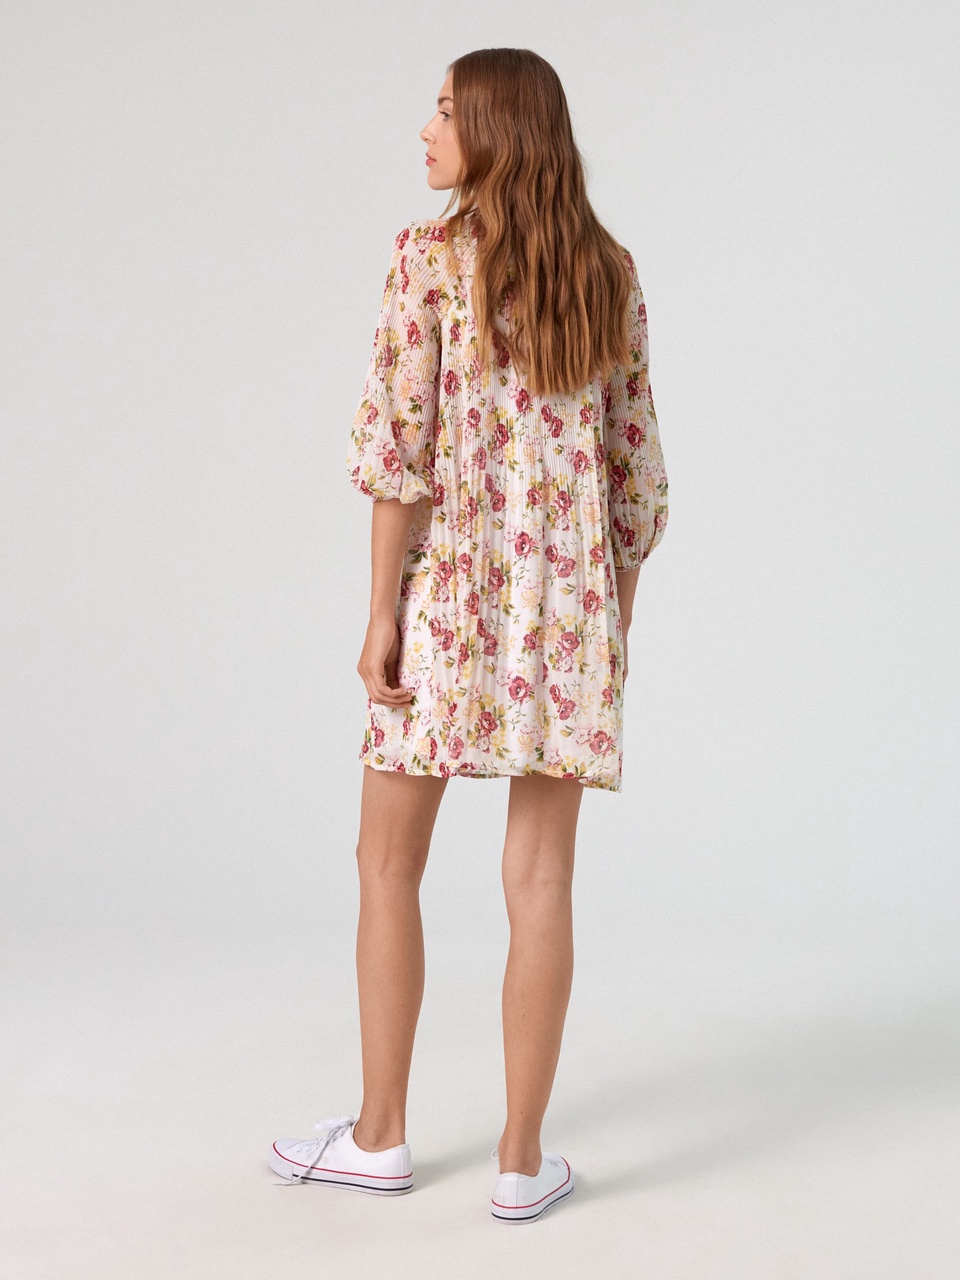 Платье с цветочным узором - 799 ₽, заказать онлайн.